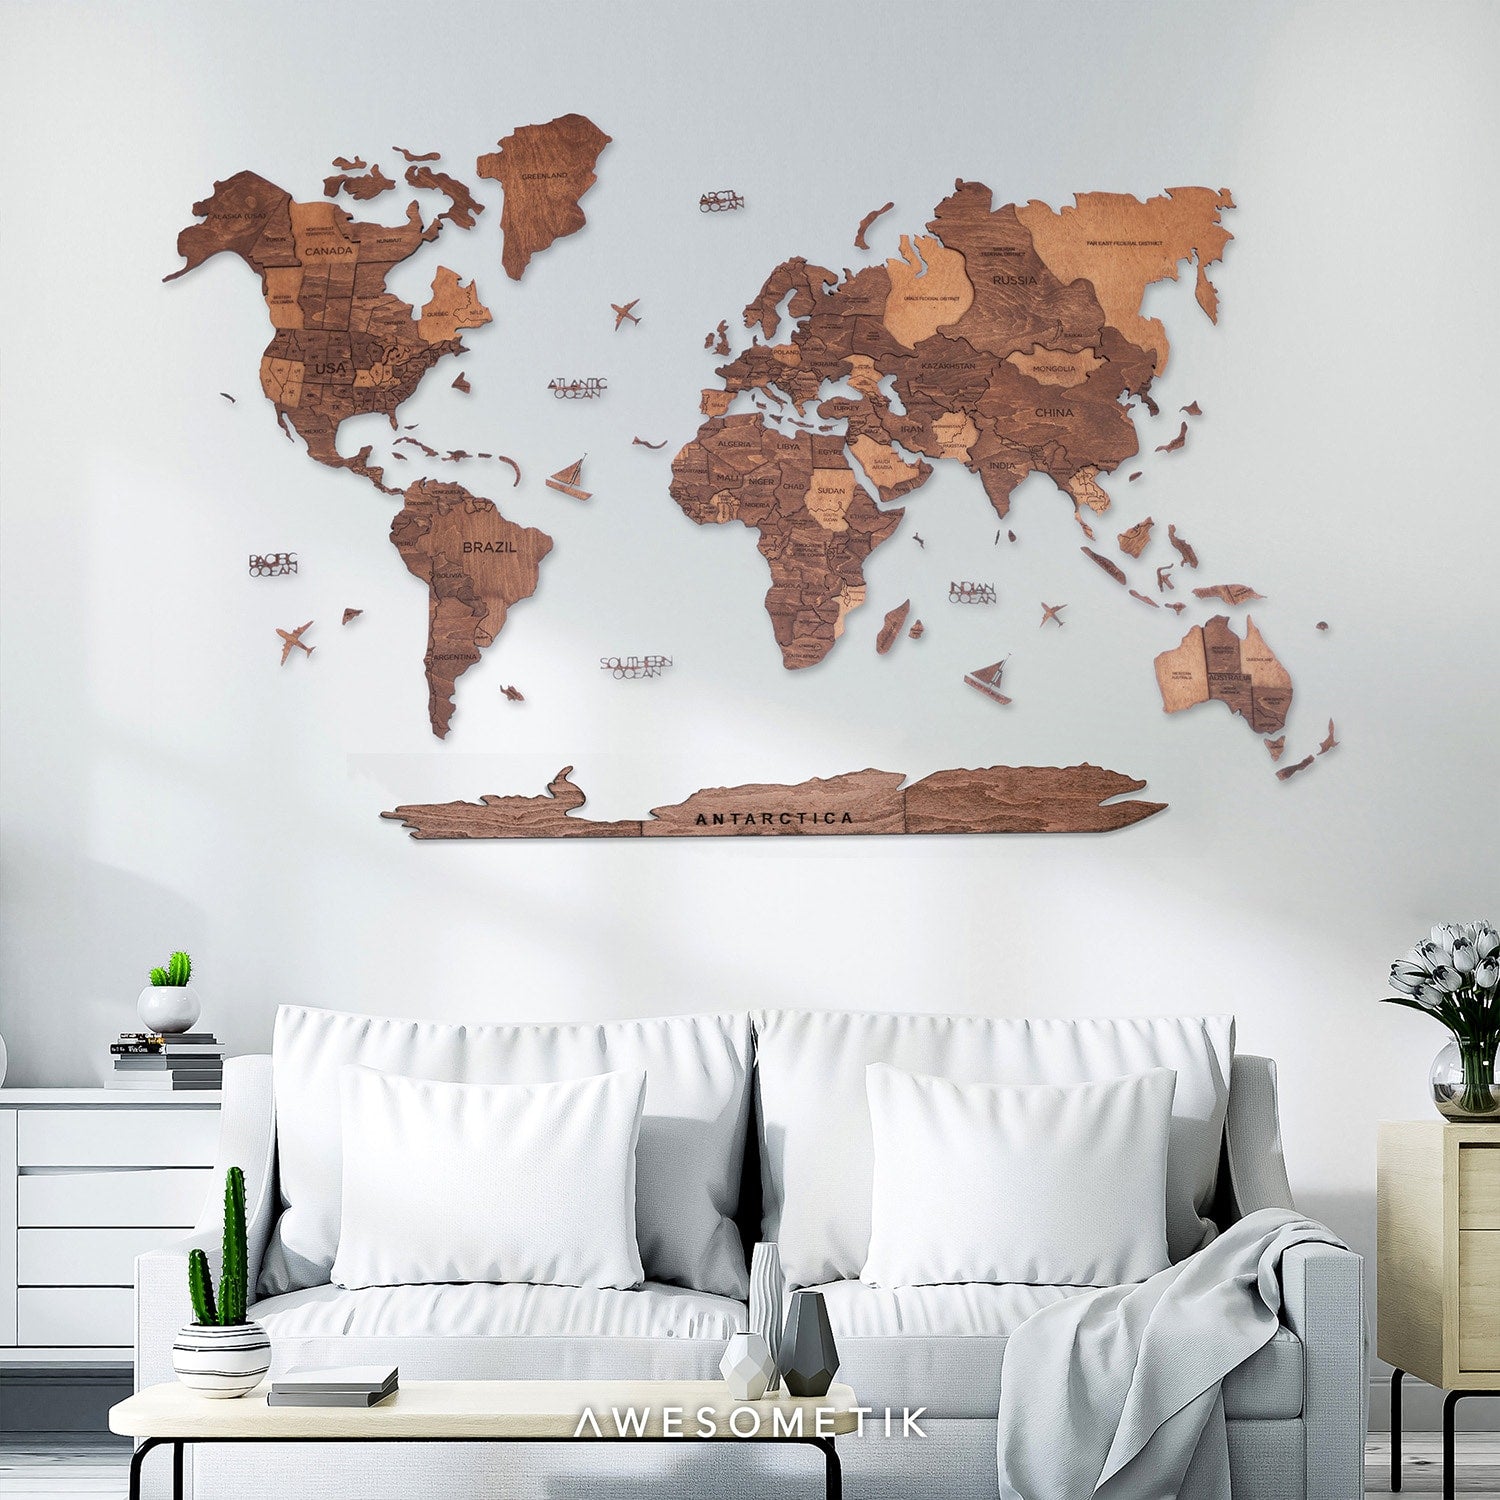 3D Wooden World Map Walnut